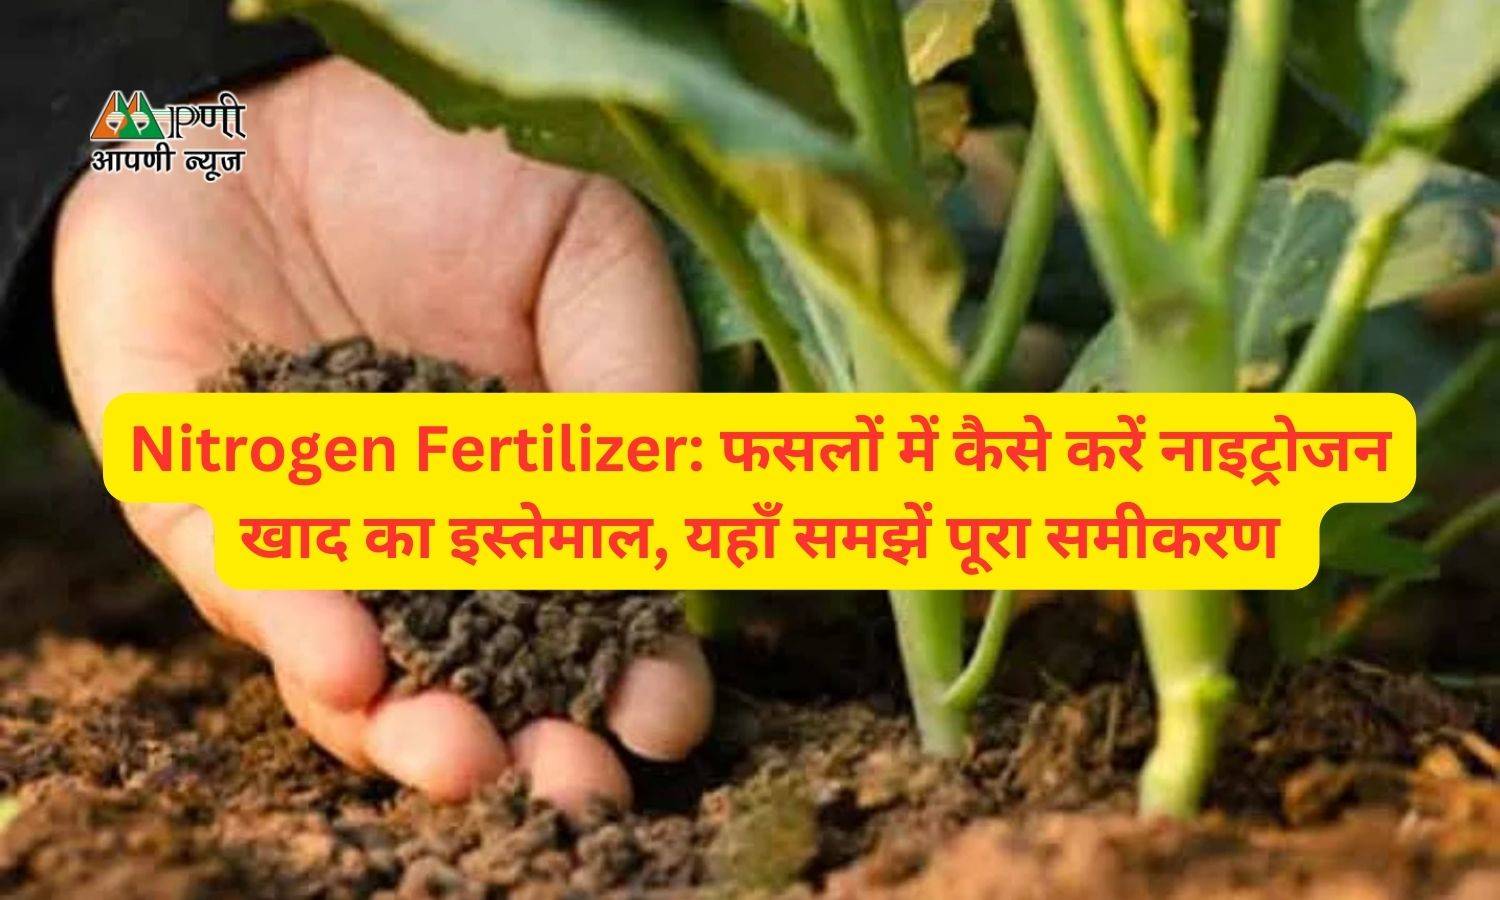 Nitrogen Fertilizer: फसलों में कैसे करें नाइट्रोजन खाद का इस्तेमाल, यहाँ समझें पूरा समीकरण